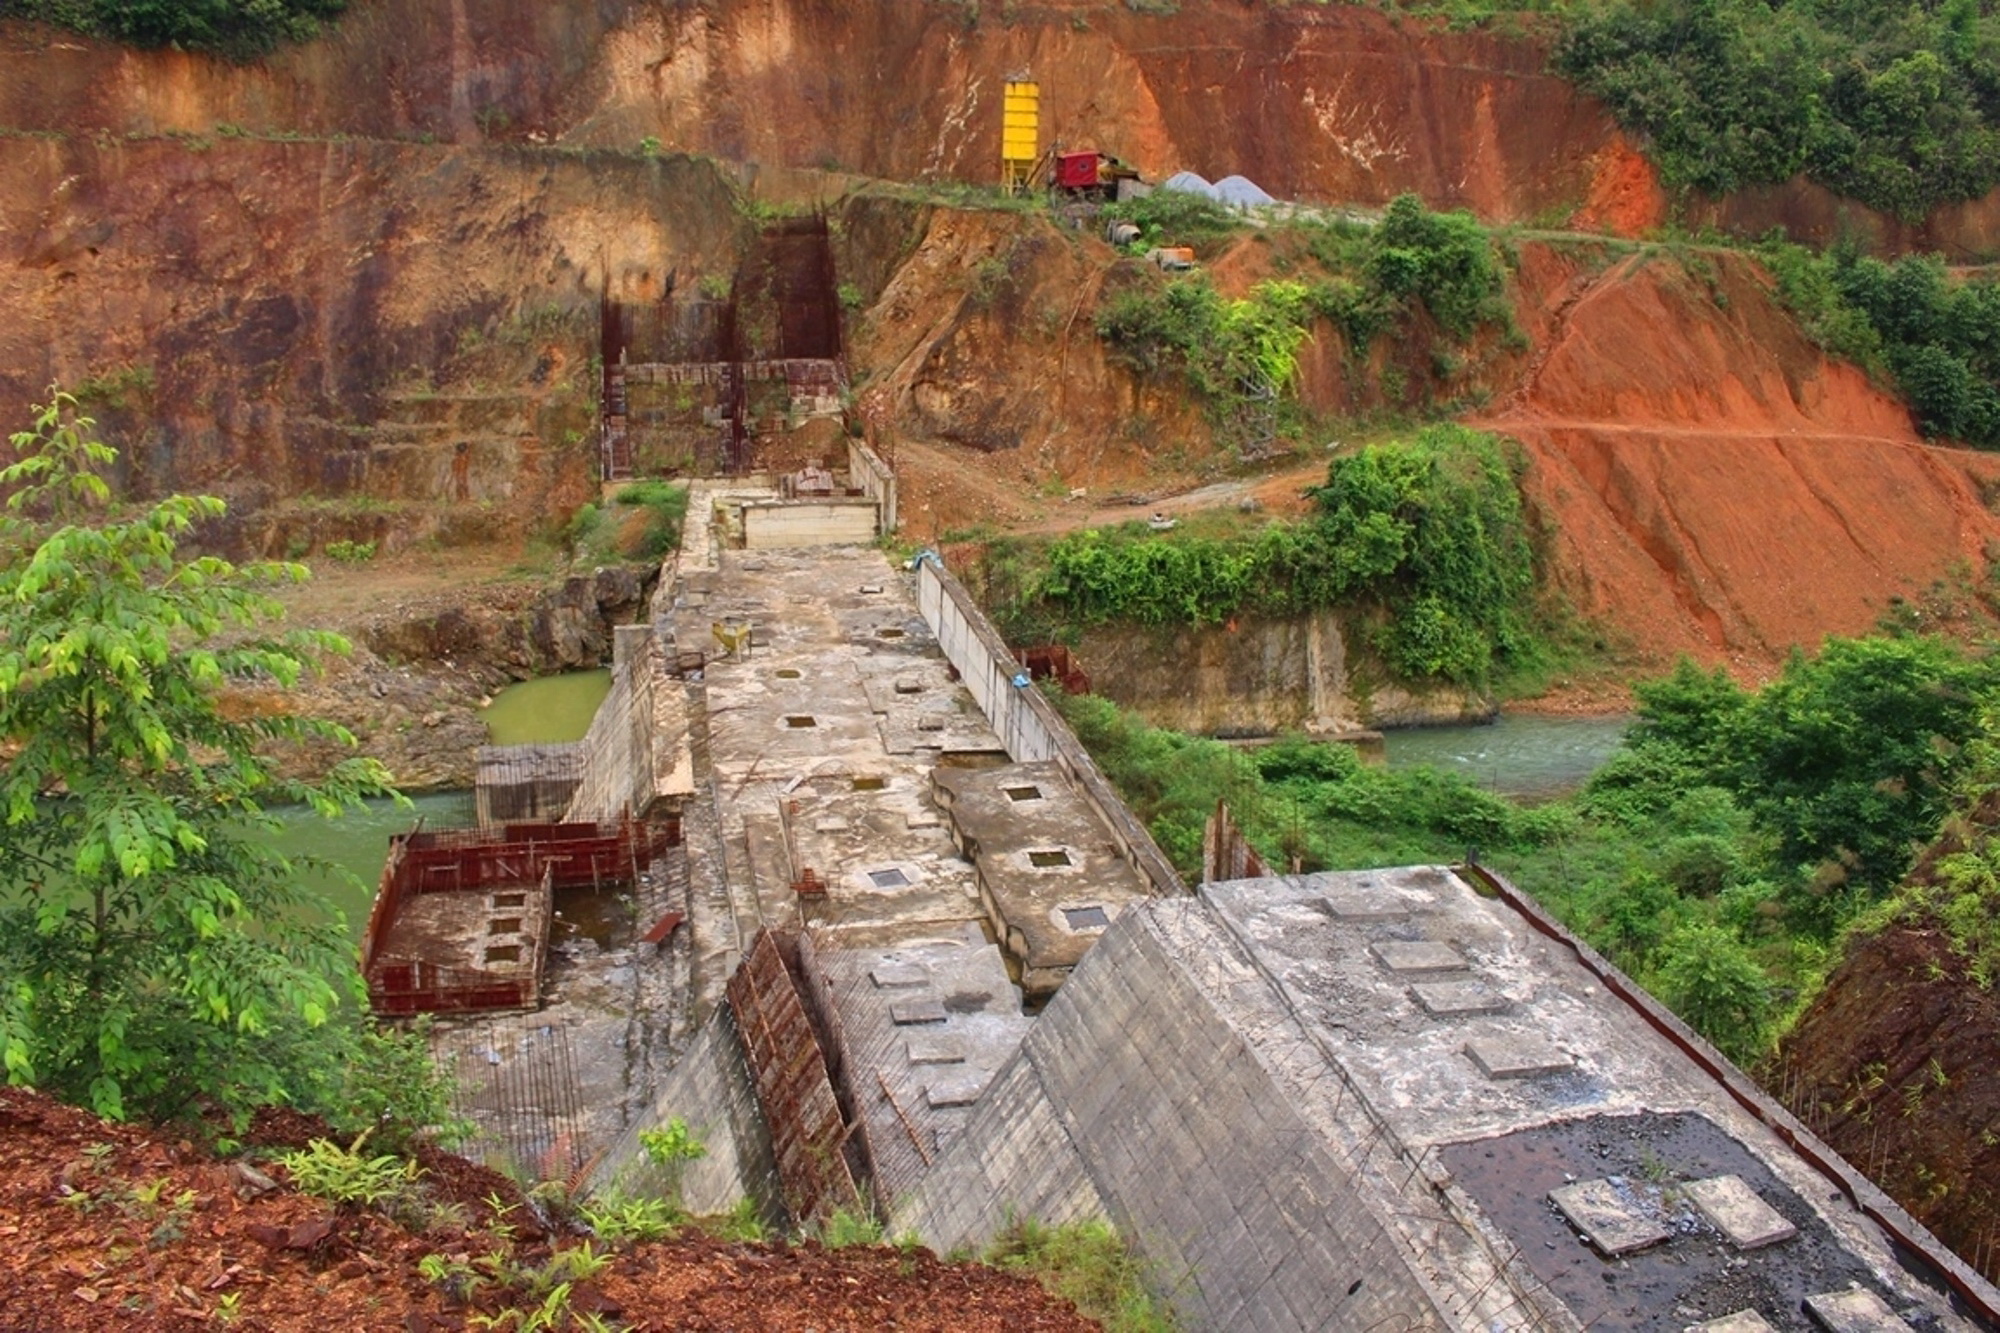 Dự án Thủy điện Hoa Thám được khởi công từ năm 2007 với tổng mức đầu từ trên 200 tỷ đồng, trong đó 70% sử dụng vốn vay của Chi nhánh Ngân hàng Phát triển tỉnh Cao Bằng, hiện dự án này vẫn đang bỏ hoang. (Ảnh: Hùng Võ/Vietnam+)